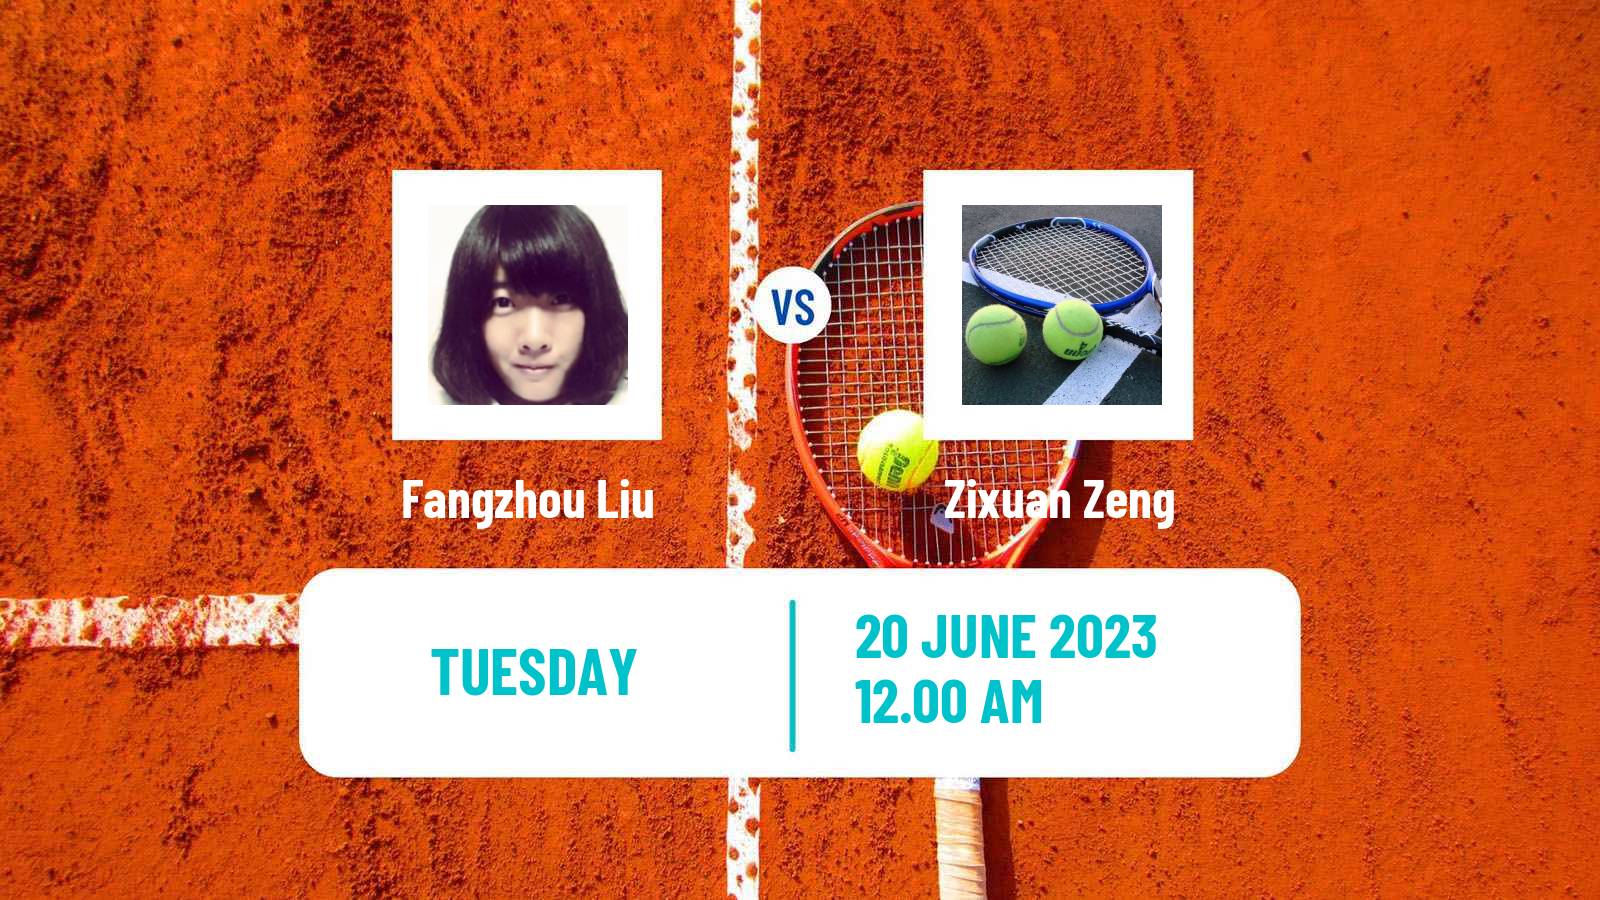 Tennis ITF W15 Tianjin 2 Women Fangzhou Liu - Zixuan Zeng